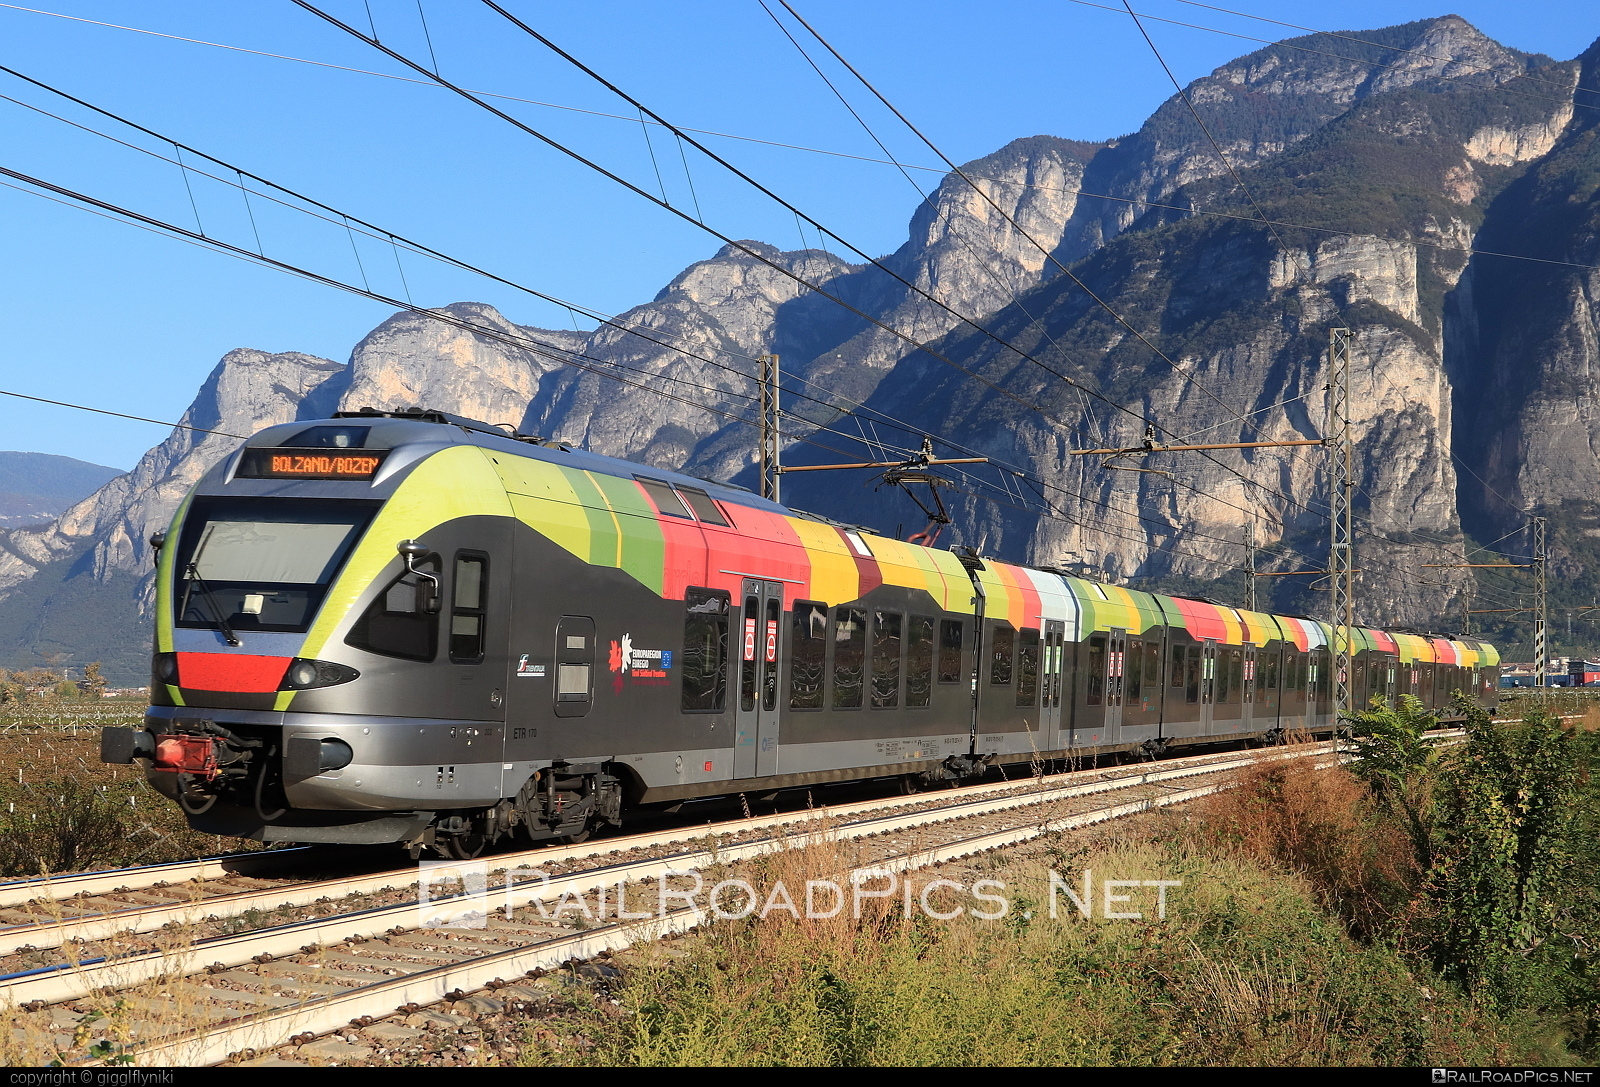 Stadler FLIRT - 170 207 operated by SAD S.p.A. #ferroviedellostato #fs #fsitaliane #sad #stadler #stadlerFlirt #stadlerrail #stadlerrailag #trenitalia #trenitaliaspa